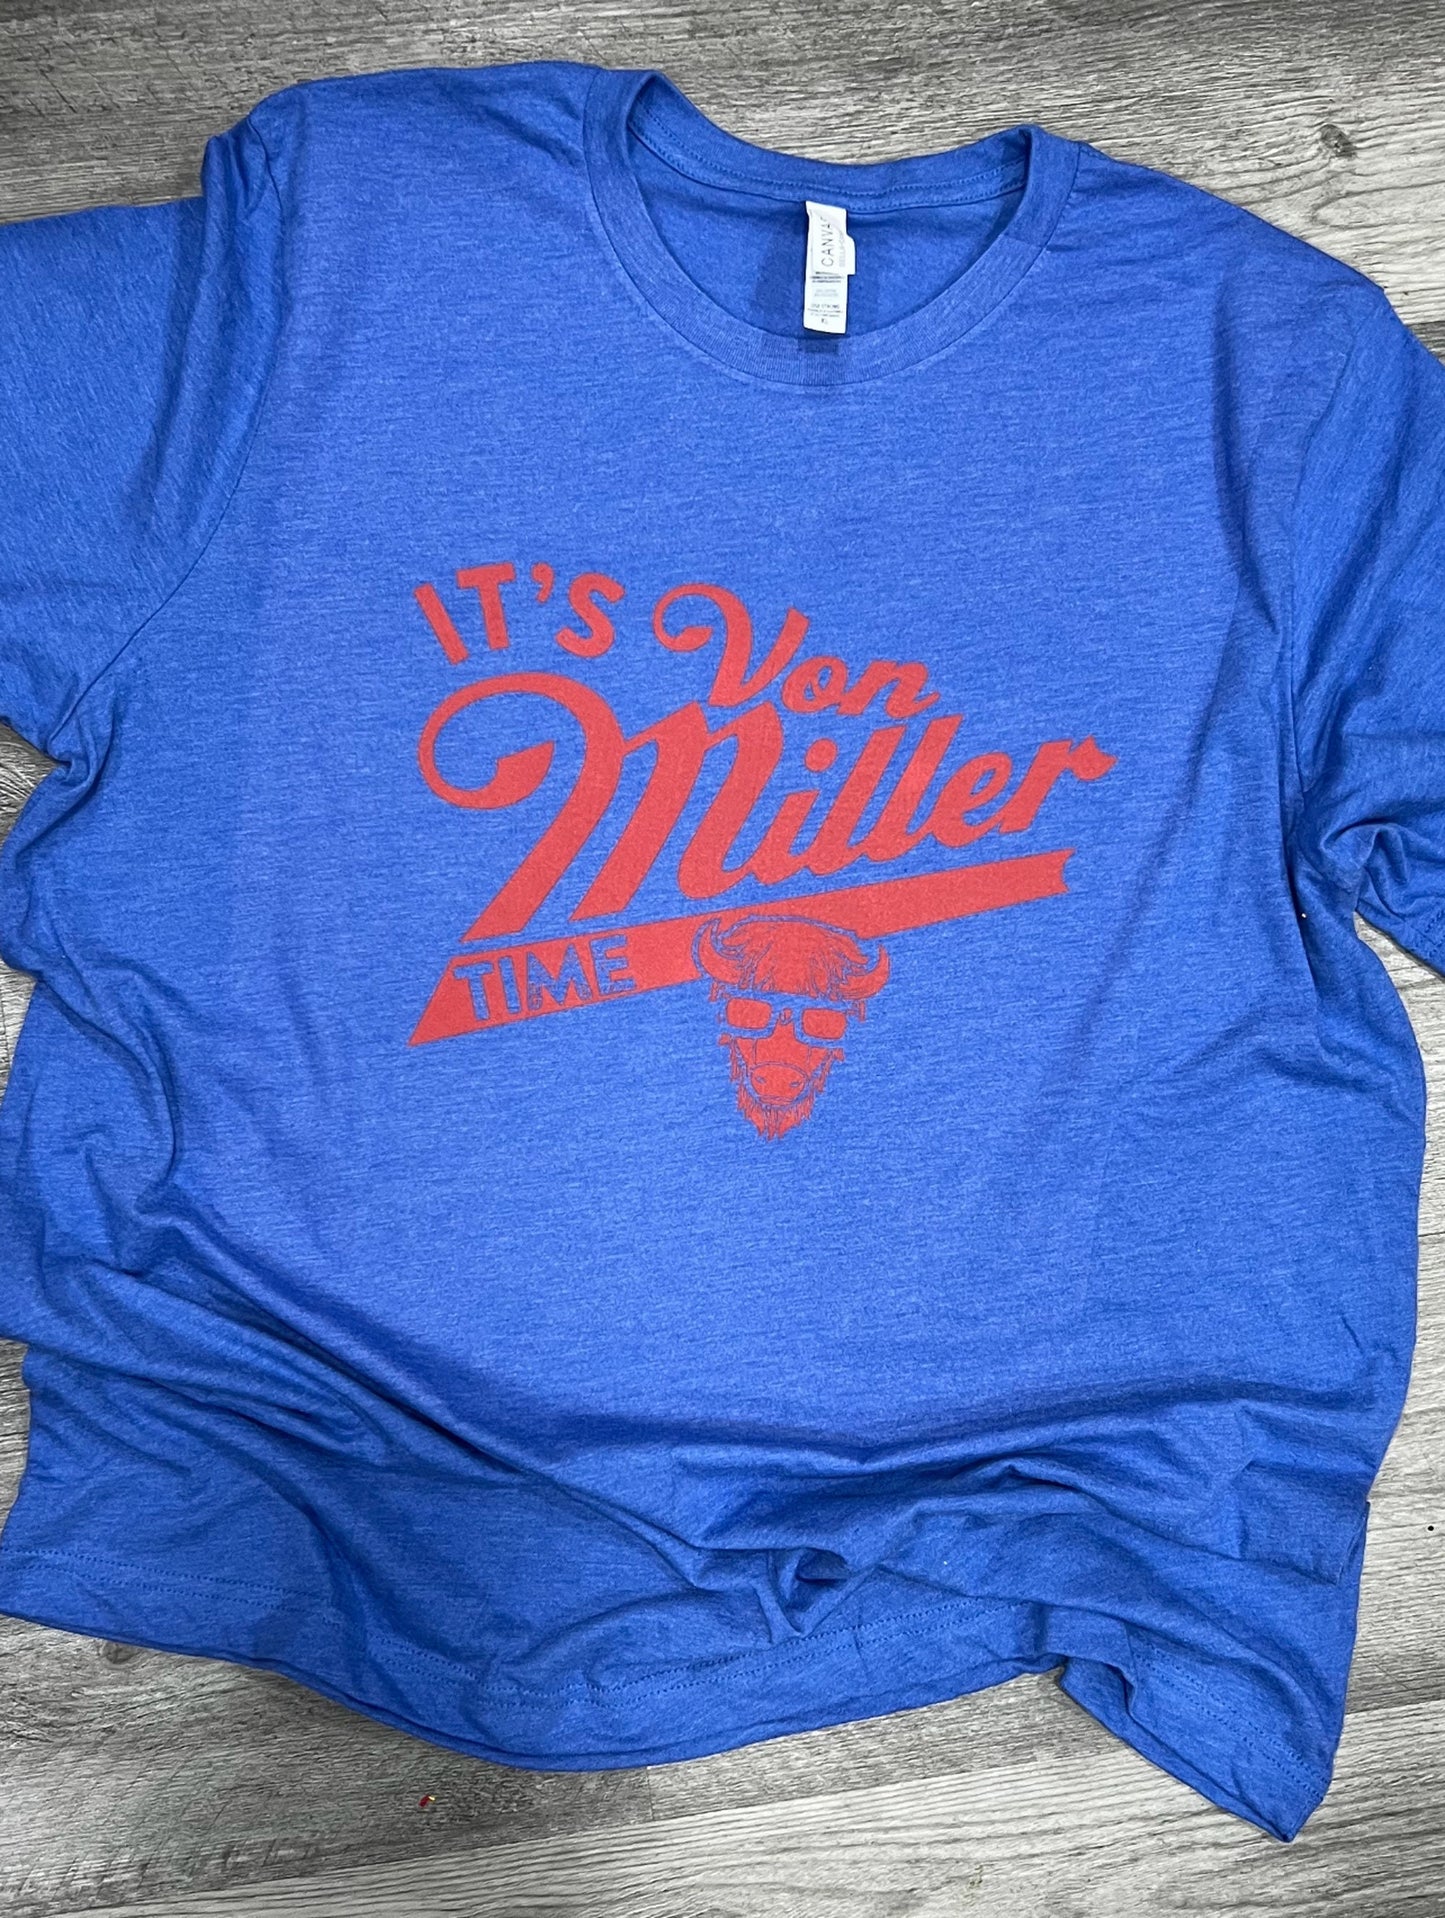 Von Miller Bills Shirt